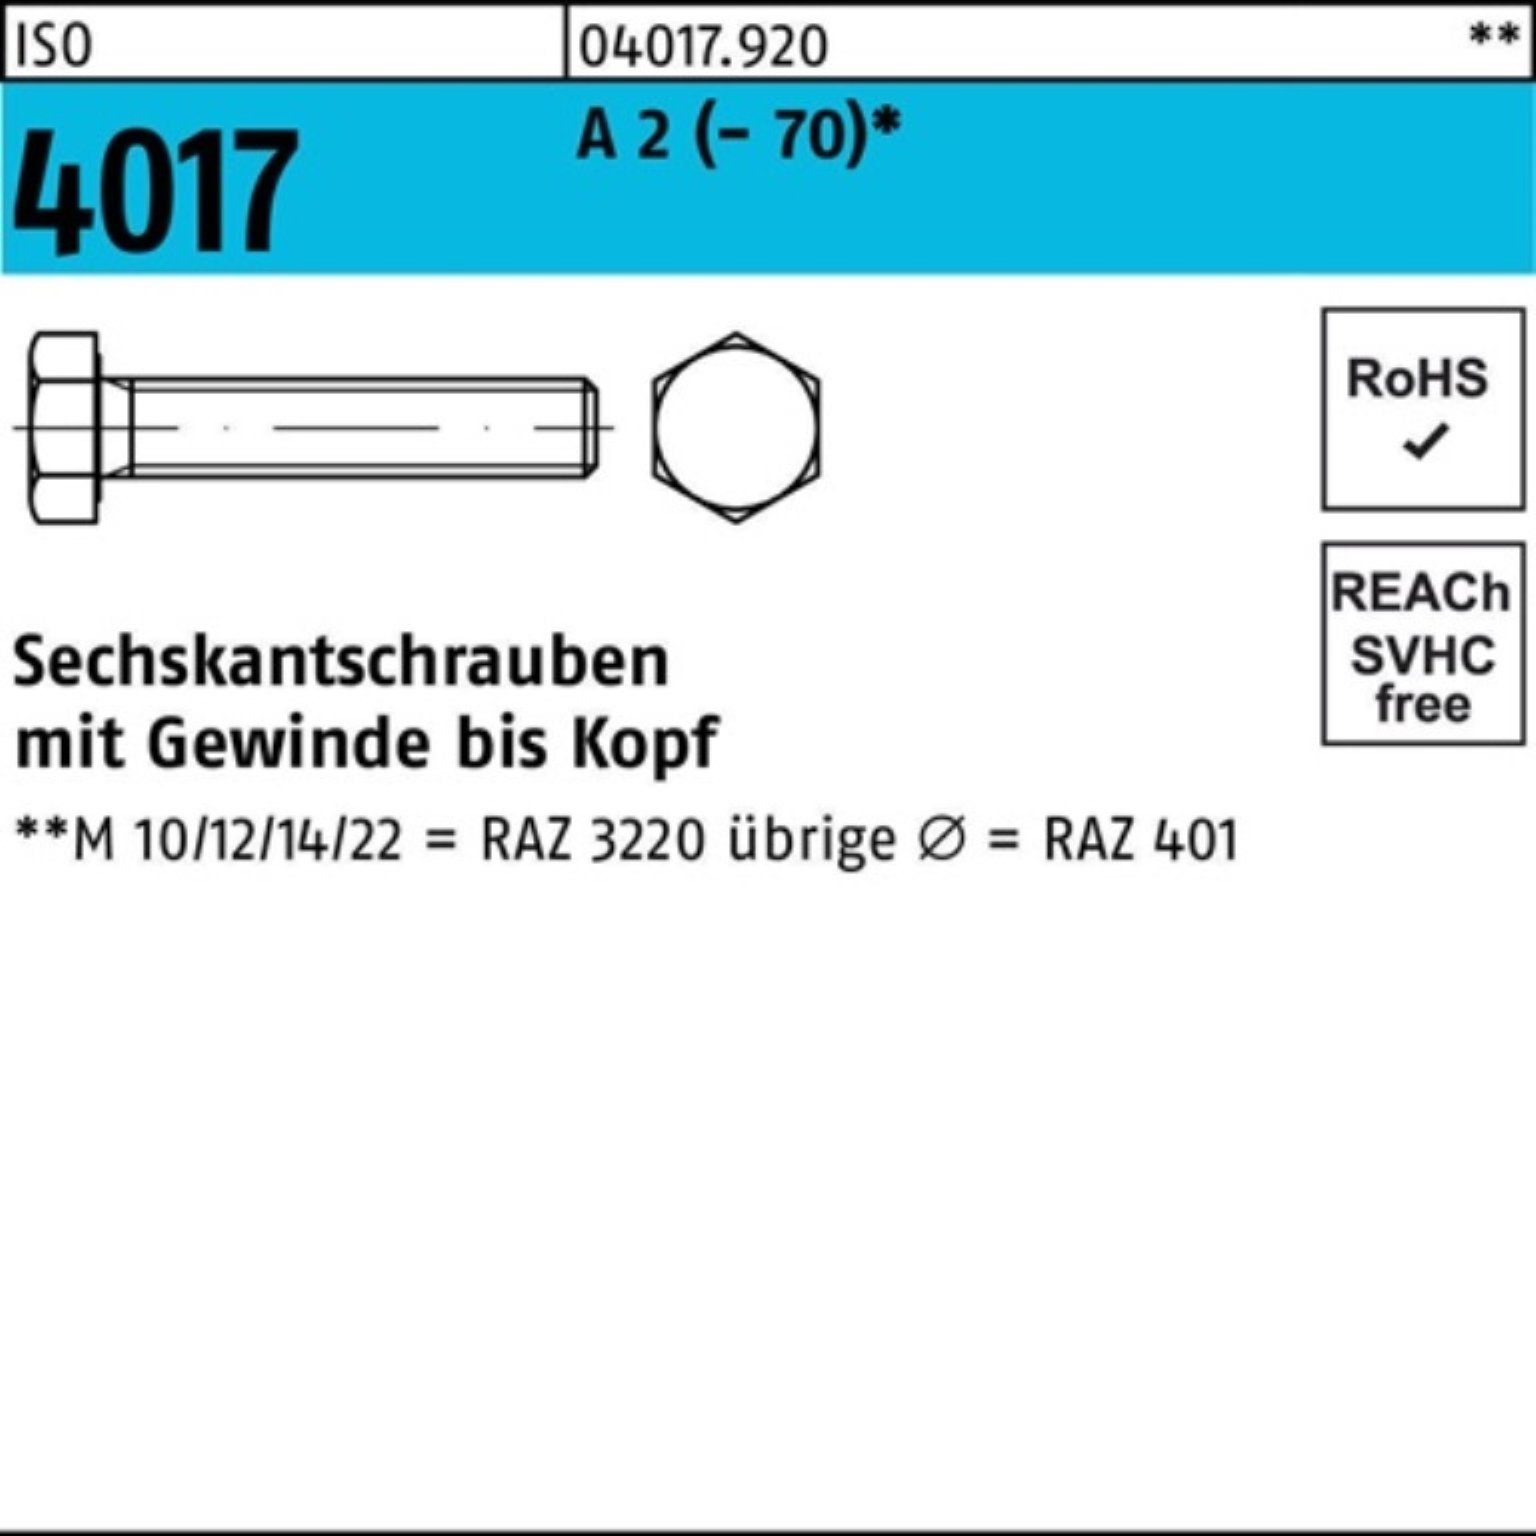 Sechskantschraube VG 22 4017 (70) A ISO 100er Pack Sechskantschraube Stück M10x 2 Bufab 100